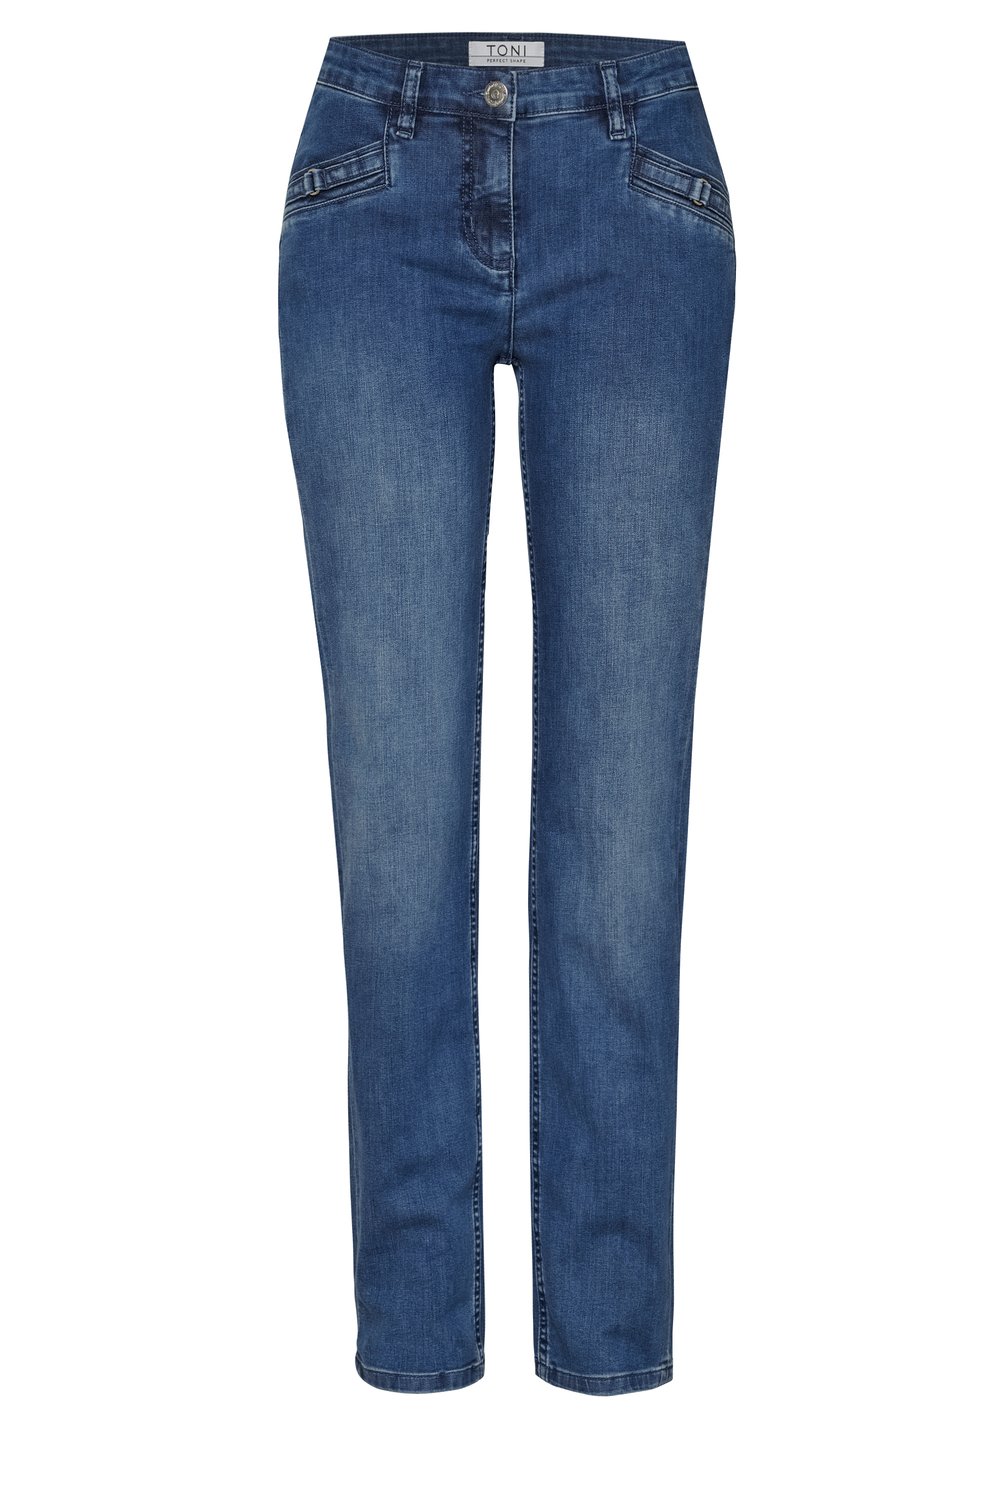 Damen-Jeans "Perfect Shape Straight" mit geradem Beinabschluß